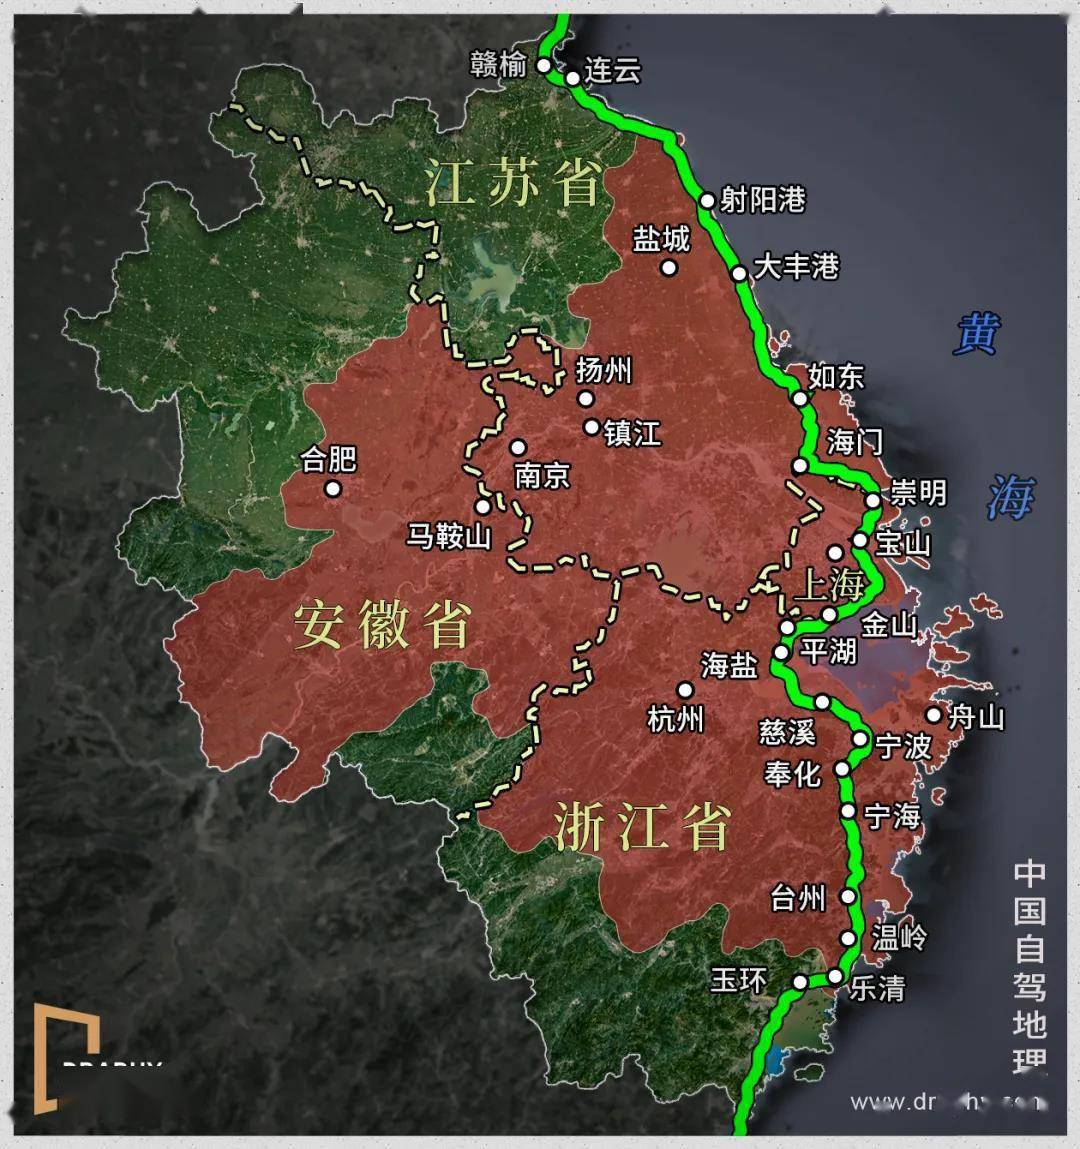 这将是中国最长的海岸线国道!|中国自驾地理